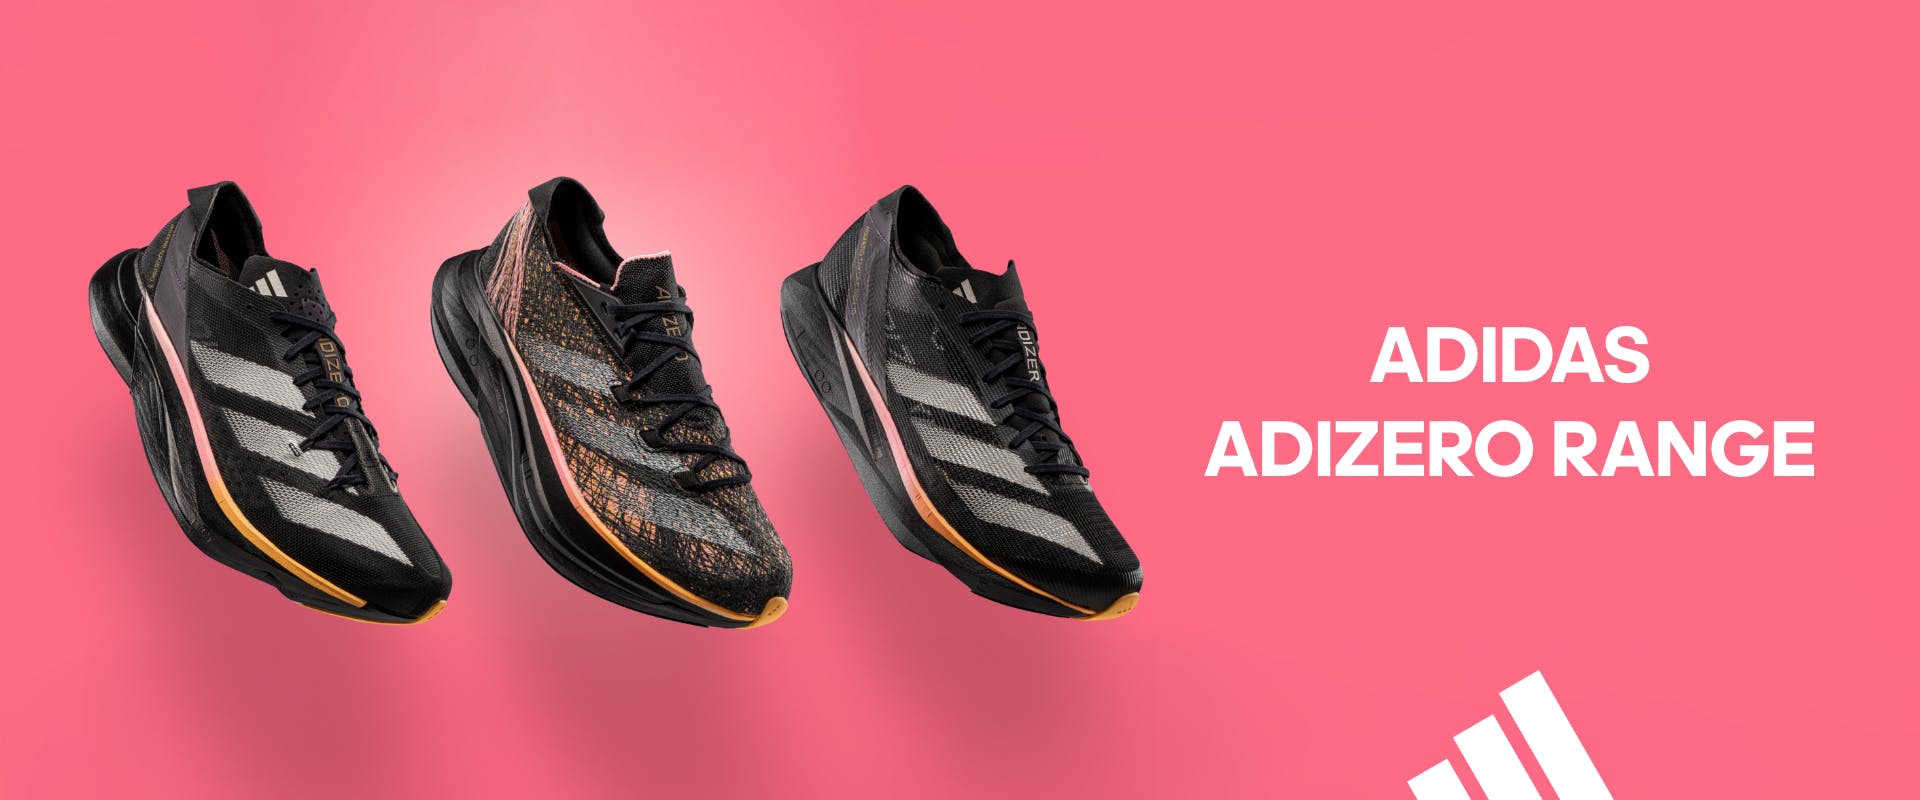 adidas Adizero range. Olympic Pack